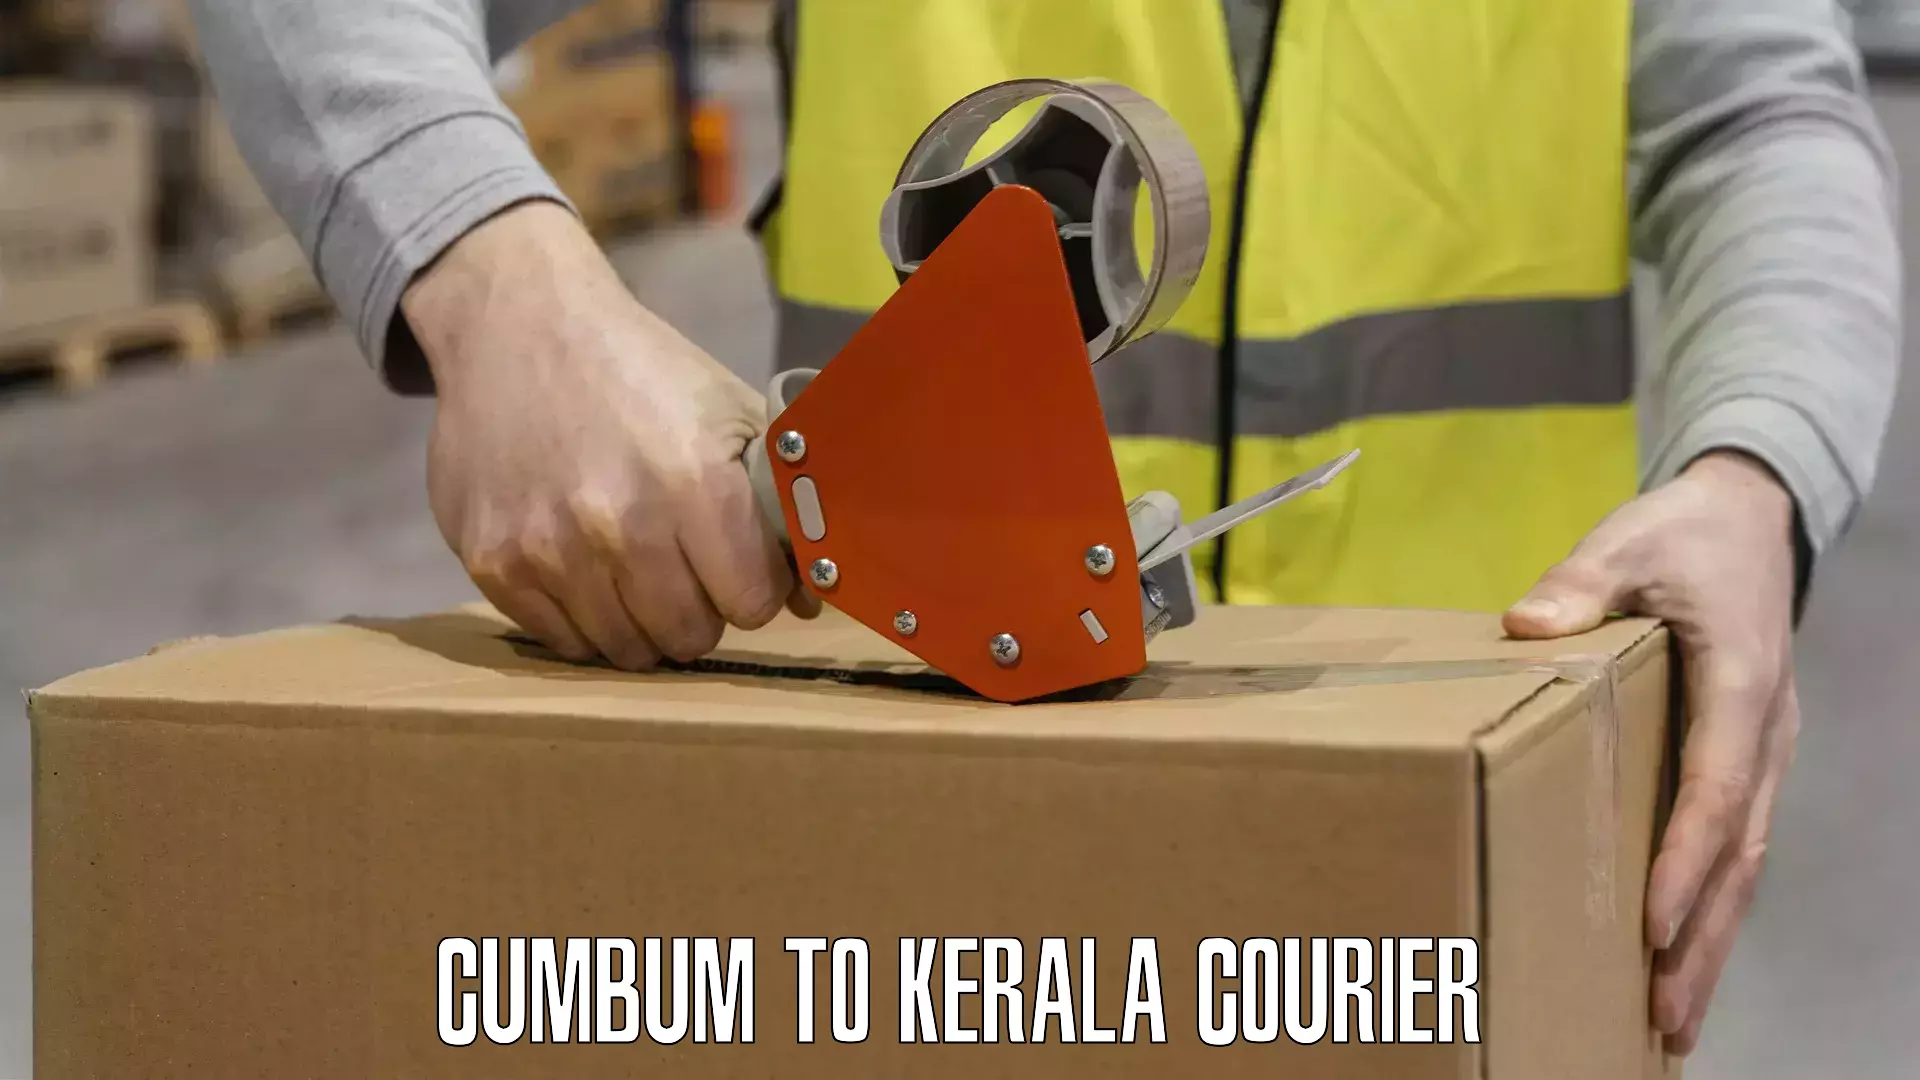 Subscription-based courier Cumbum to Mundakayam